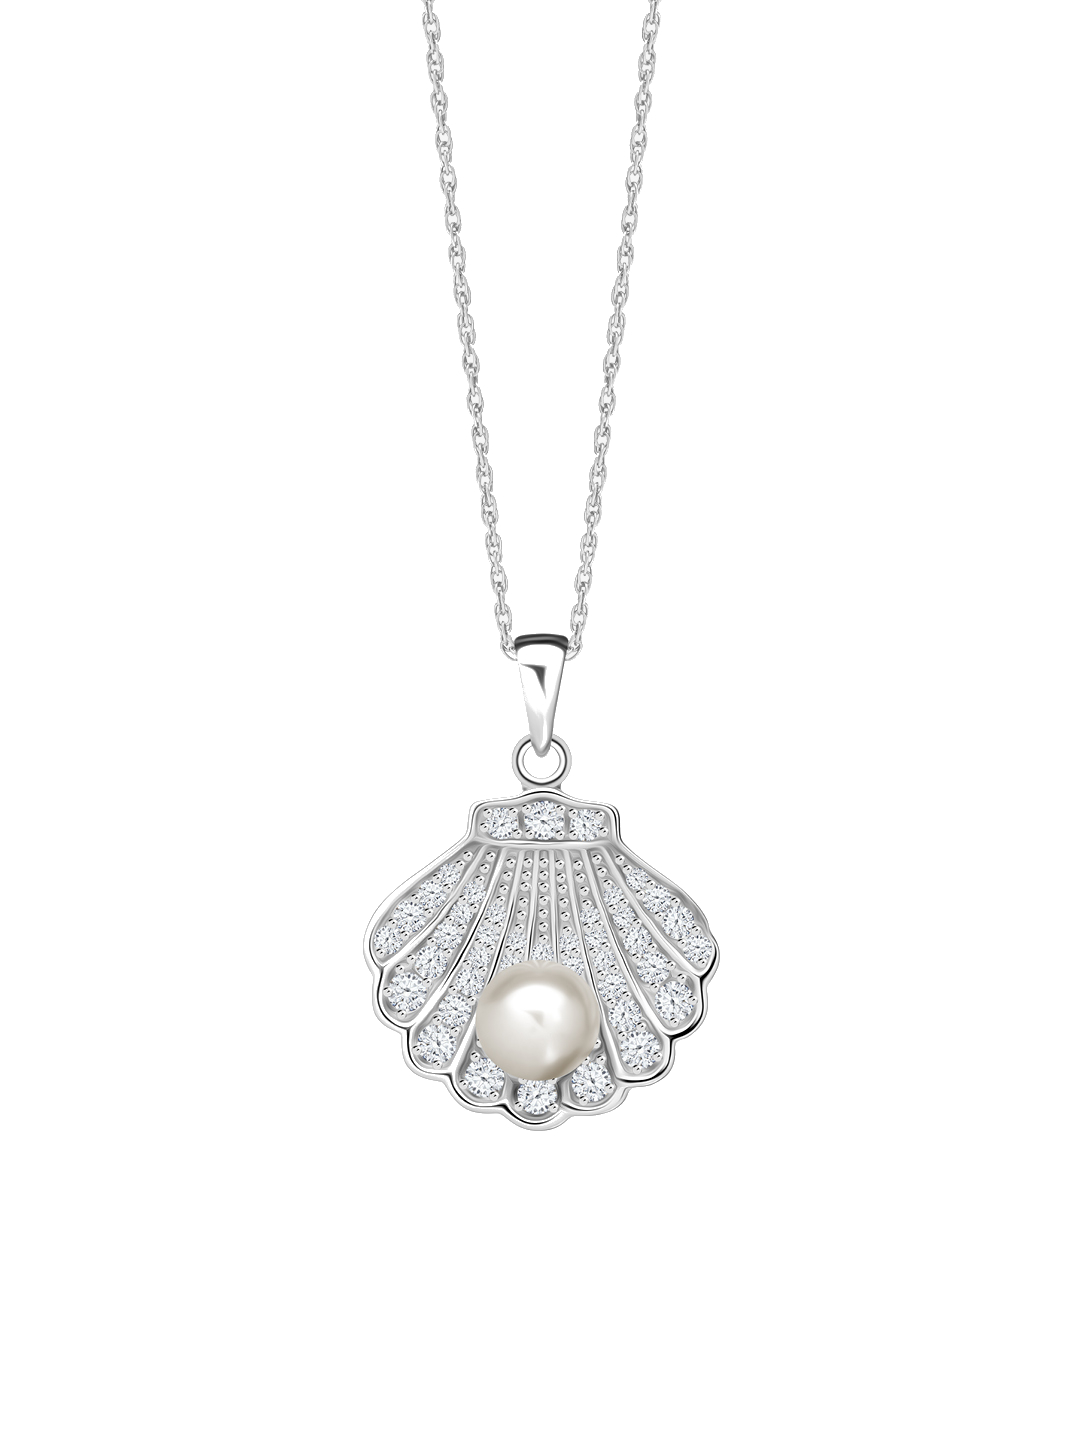 Levně Preciosa Nádherný stříbrný náhrdelník Birth of Venus s říční perlou a kubickou zirkonií Preciosa 5349 00